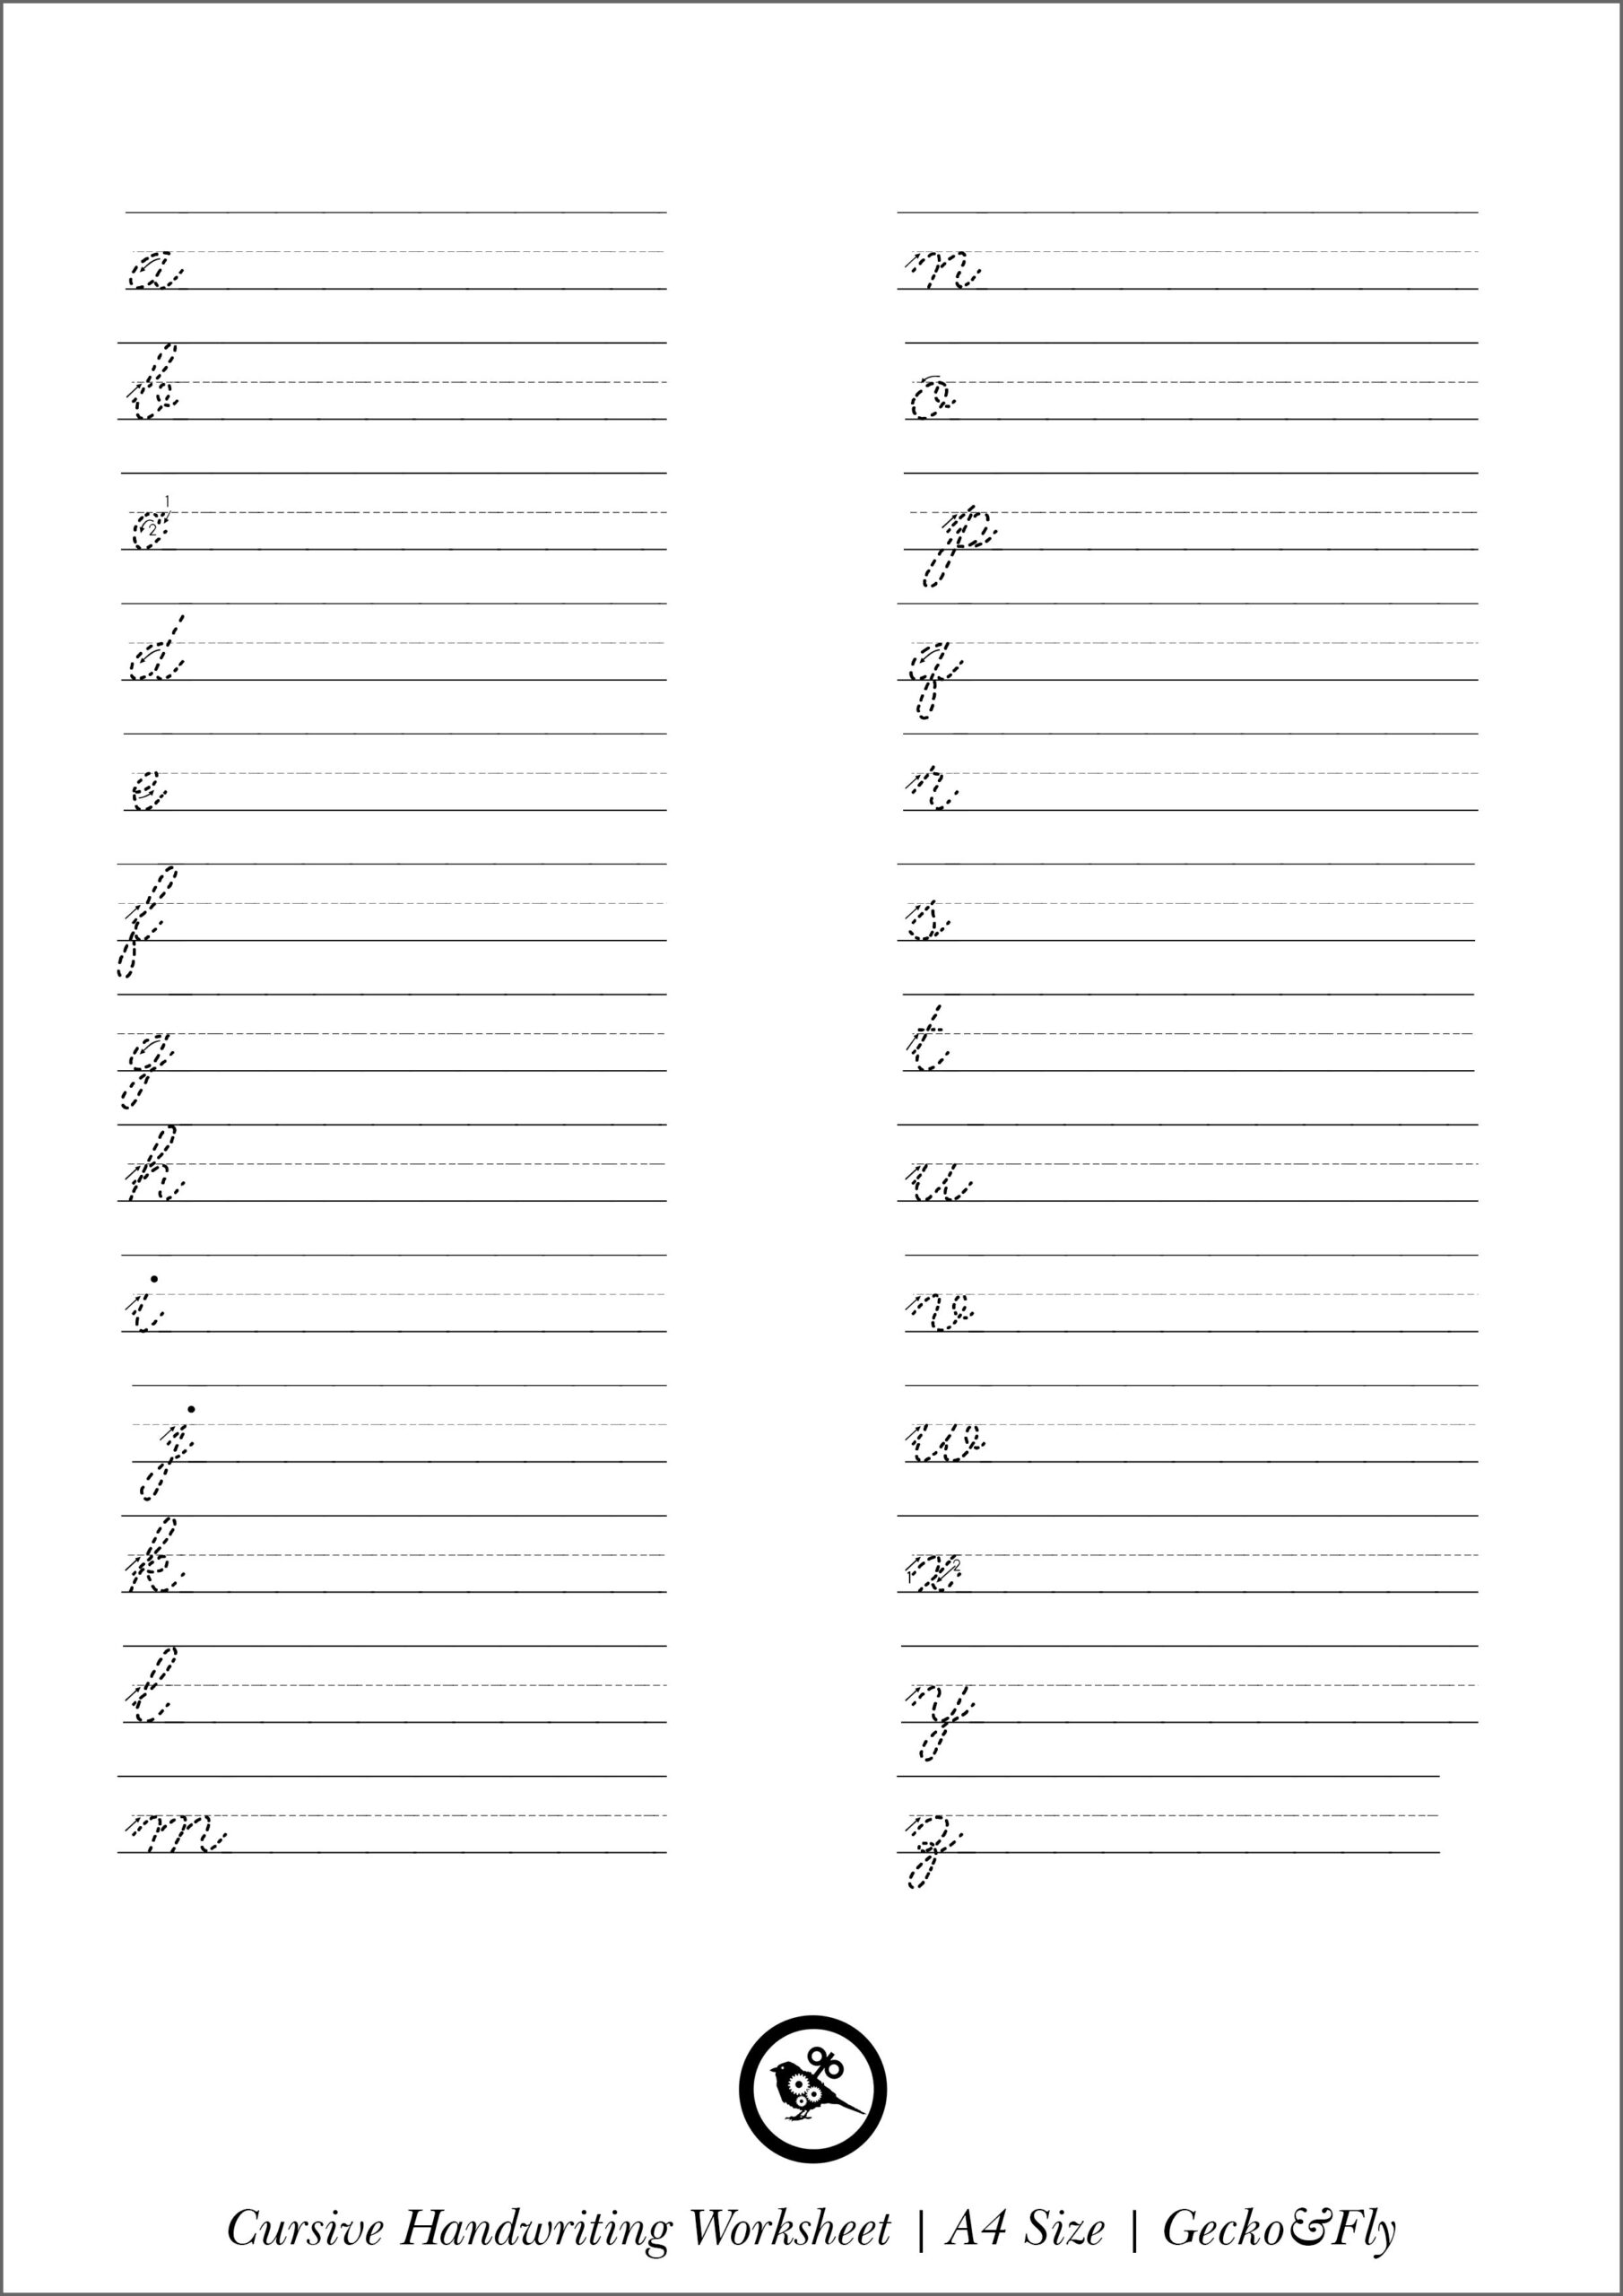 5 Printable Cursive Handwriting Worksheets For Beautiful 